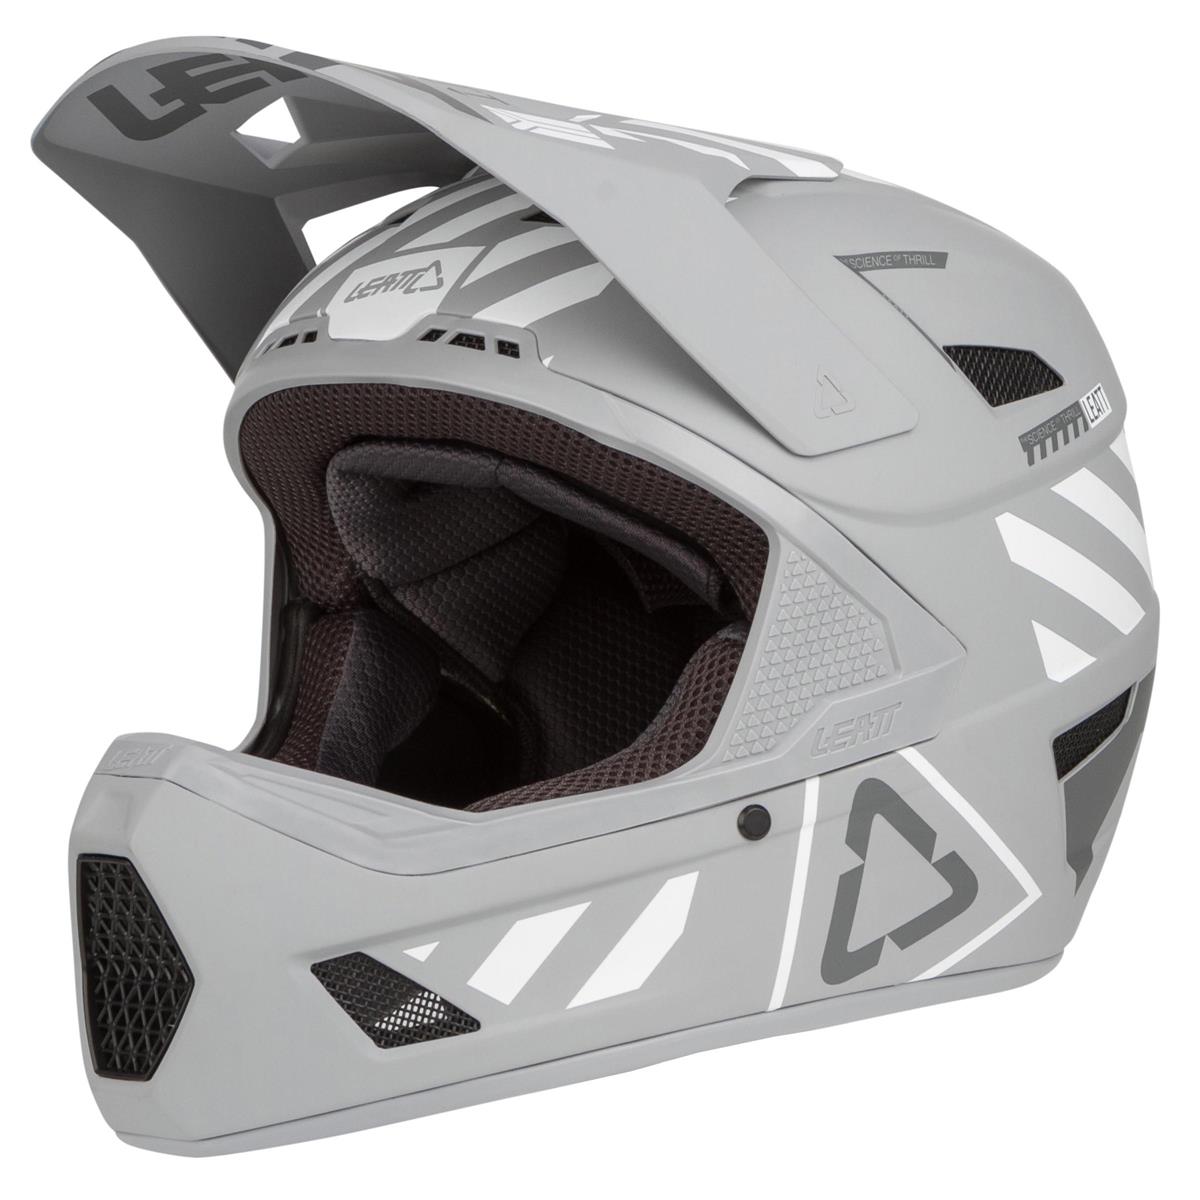 Leatt Downhill MTB Helmet DBX 3.0 Steel